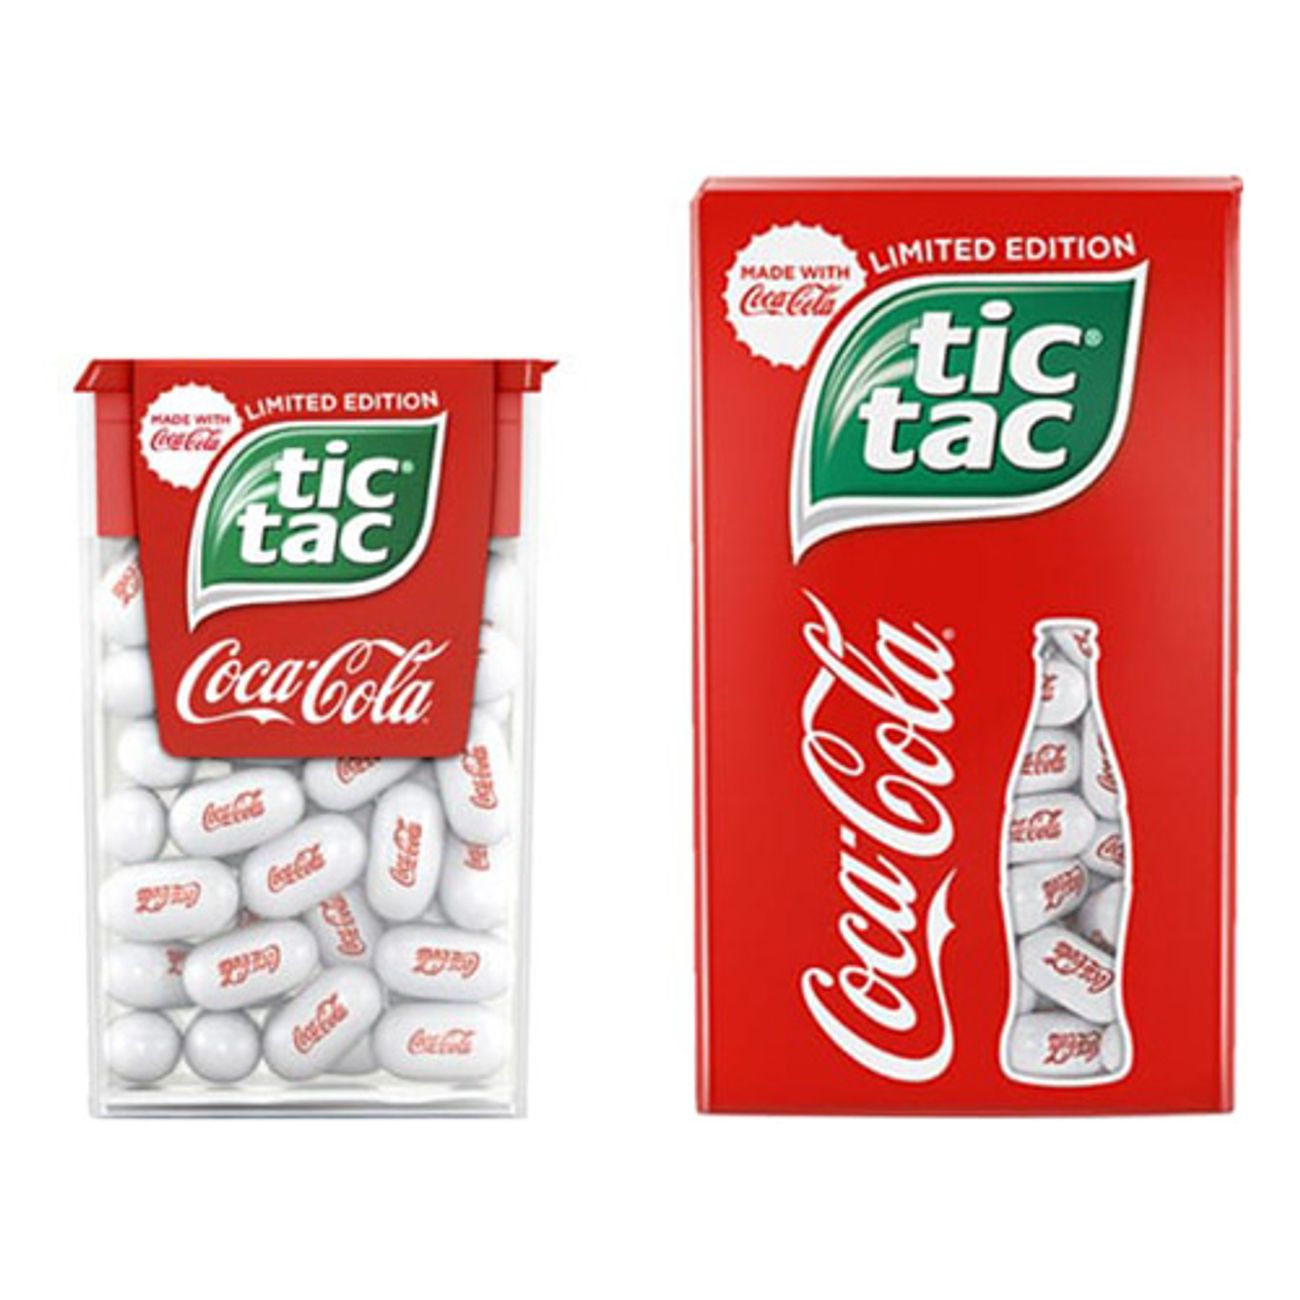 tic-tac-coca-cola-1